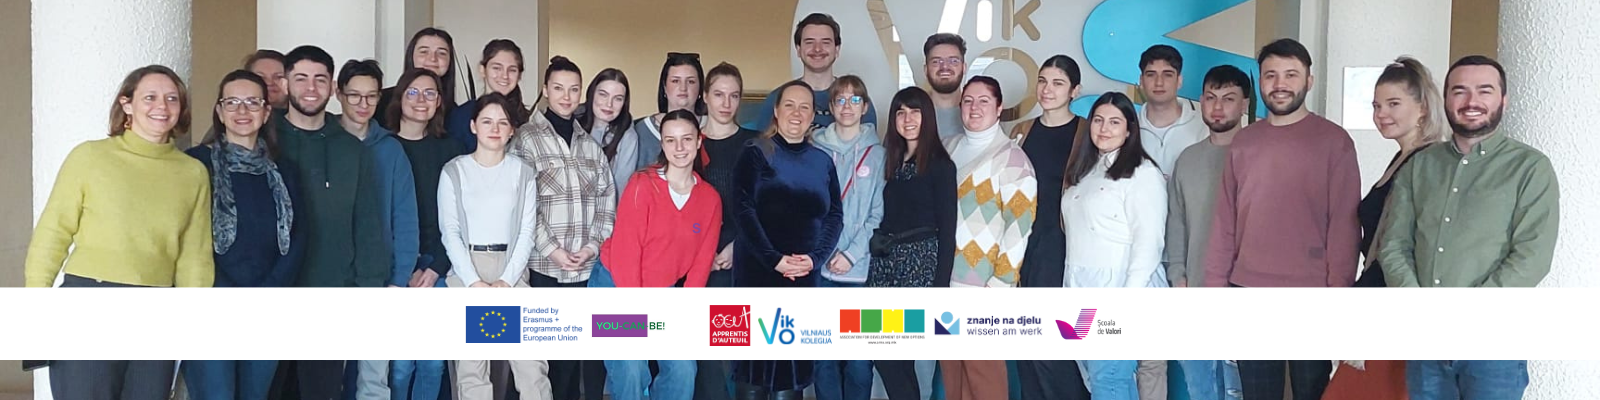 YouCanBe-trajnim në Lituani për sipërmarrës social dhe të gjelbër image